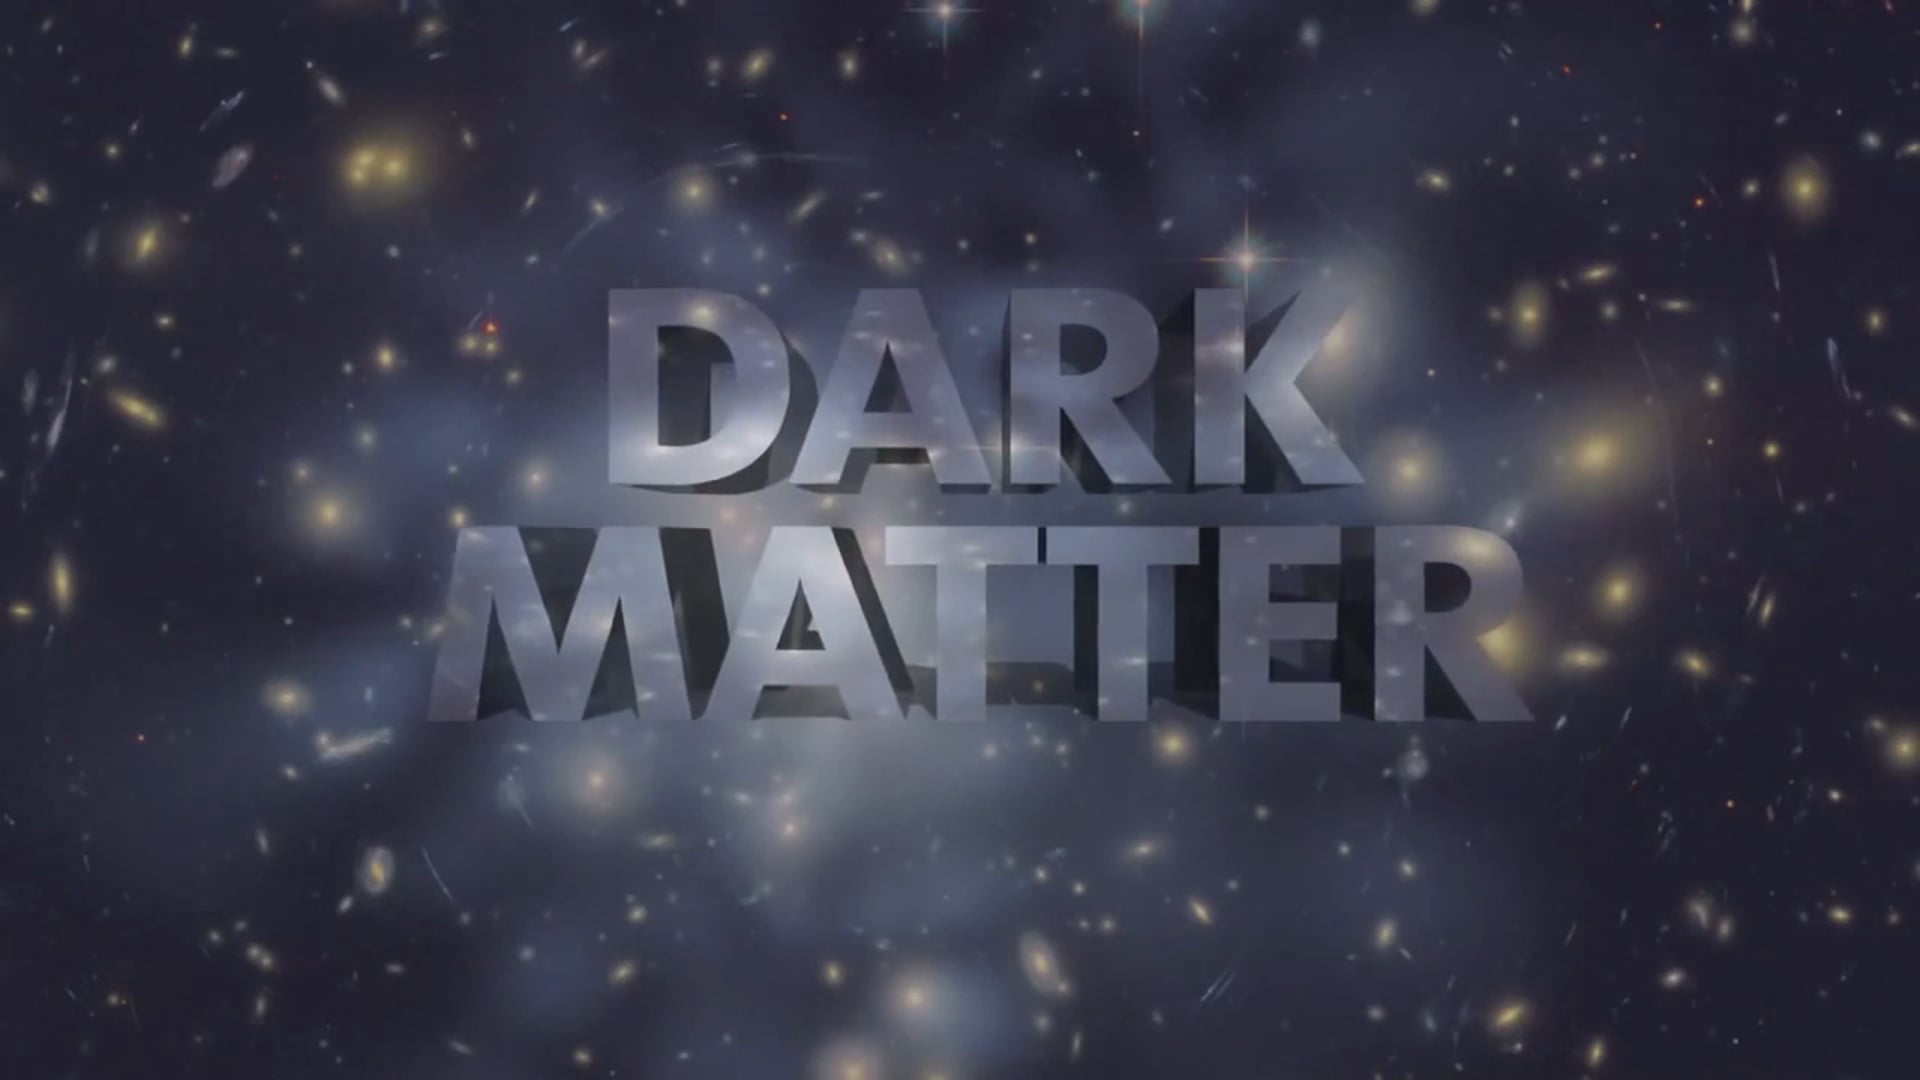 An Alternative to Dark Matter